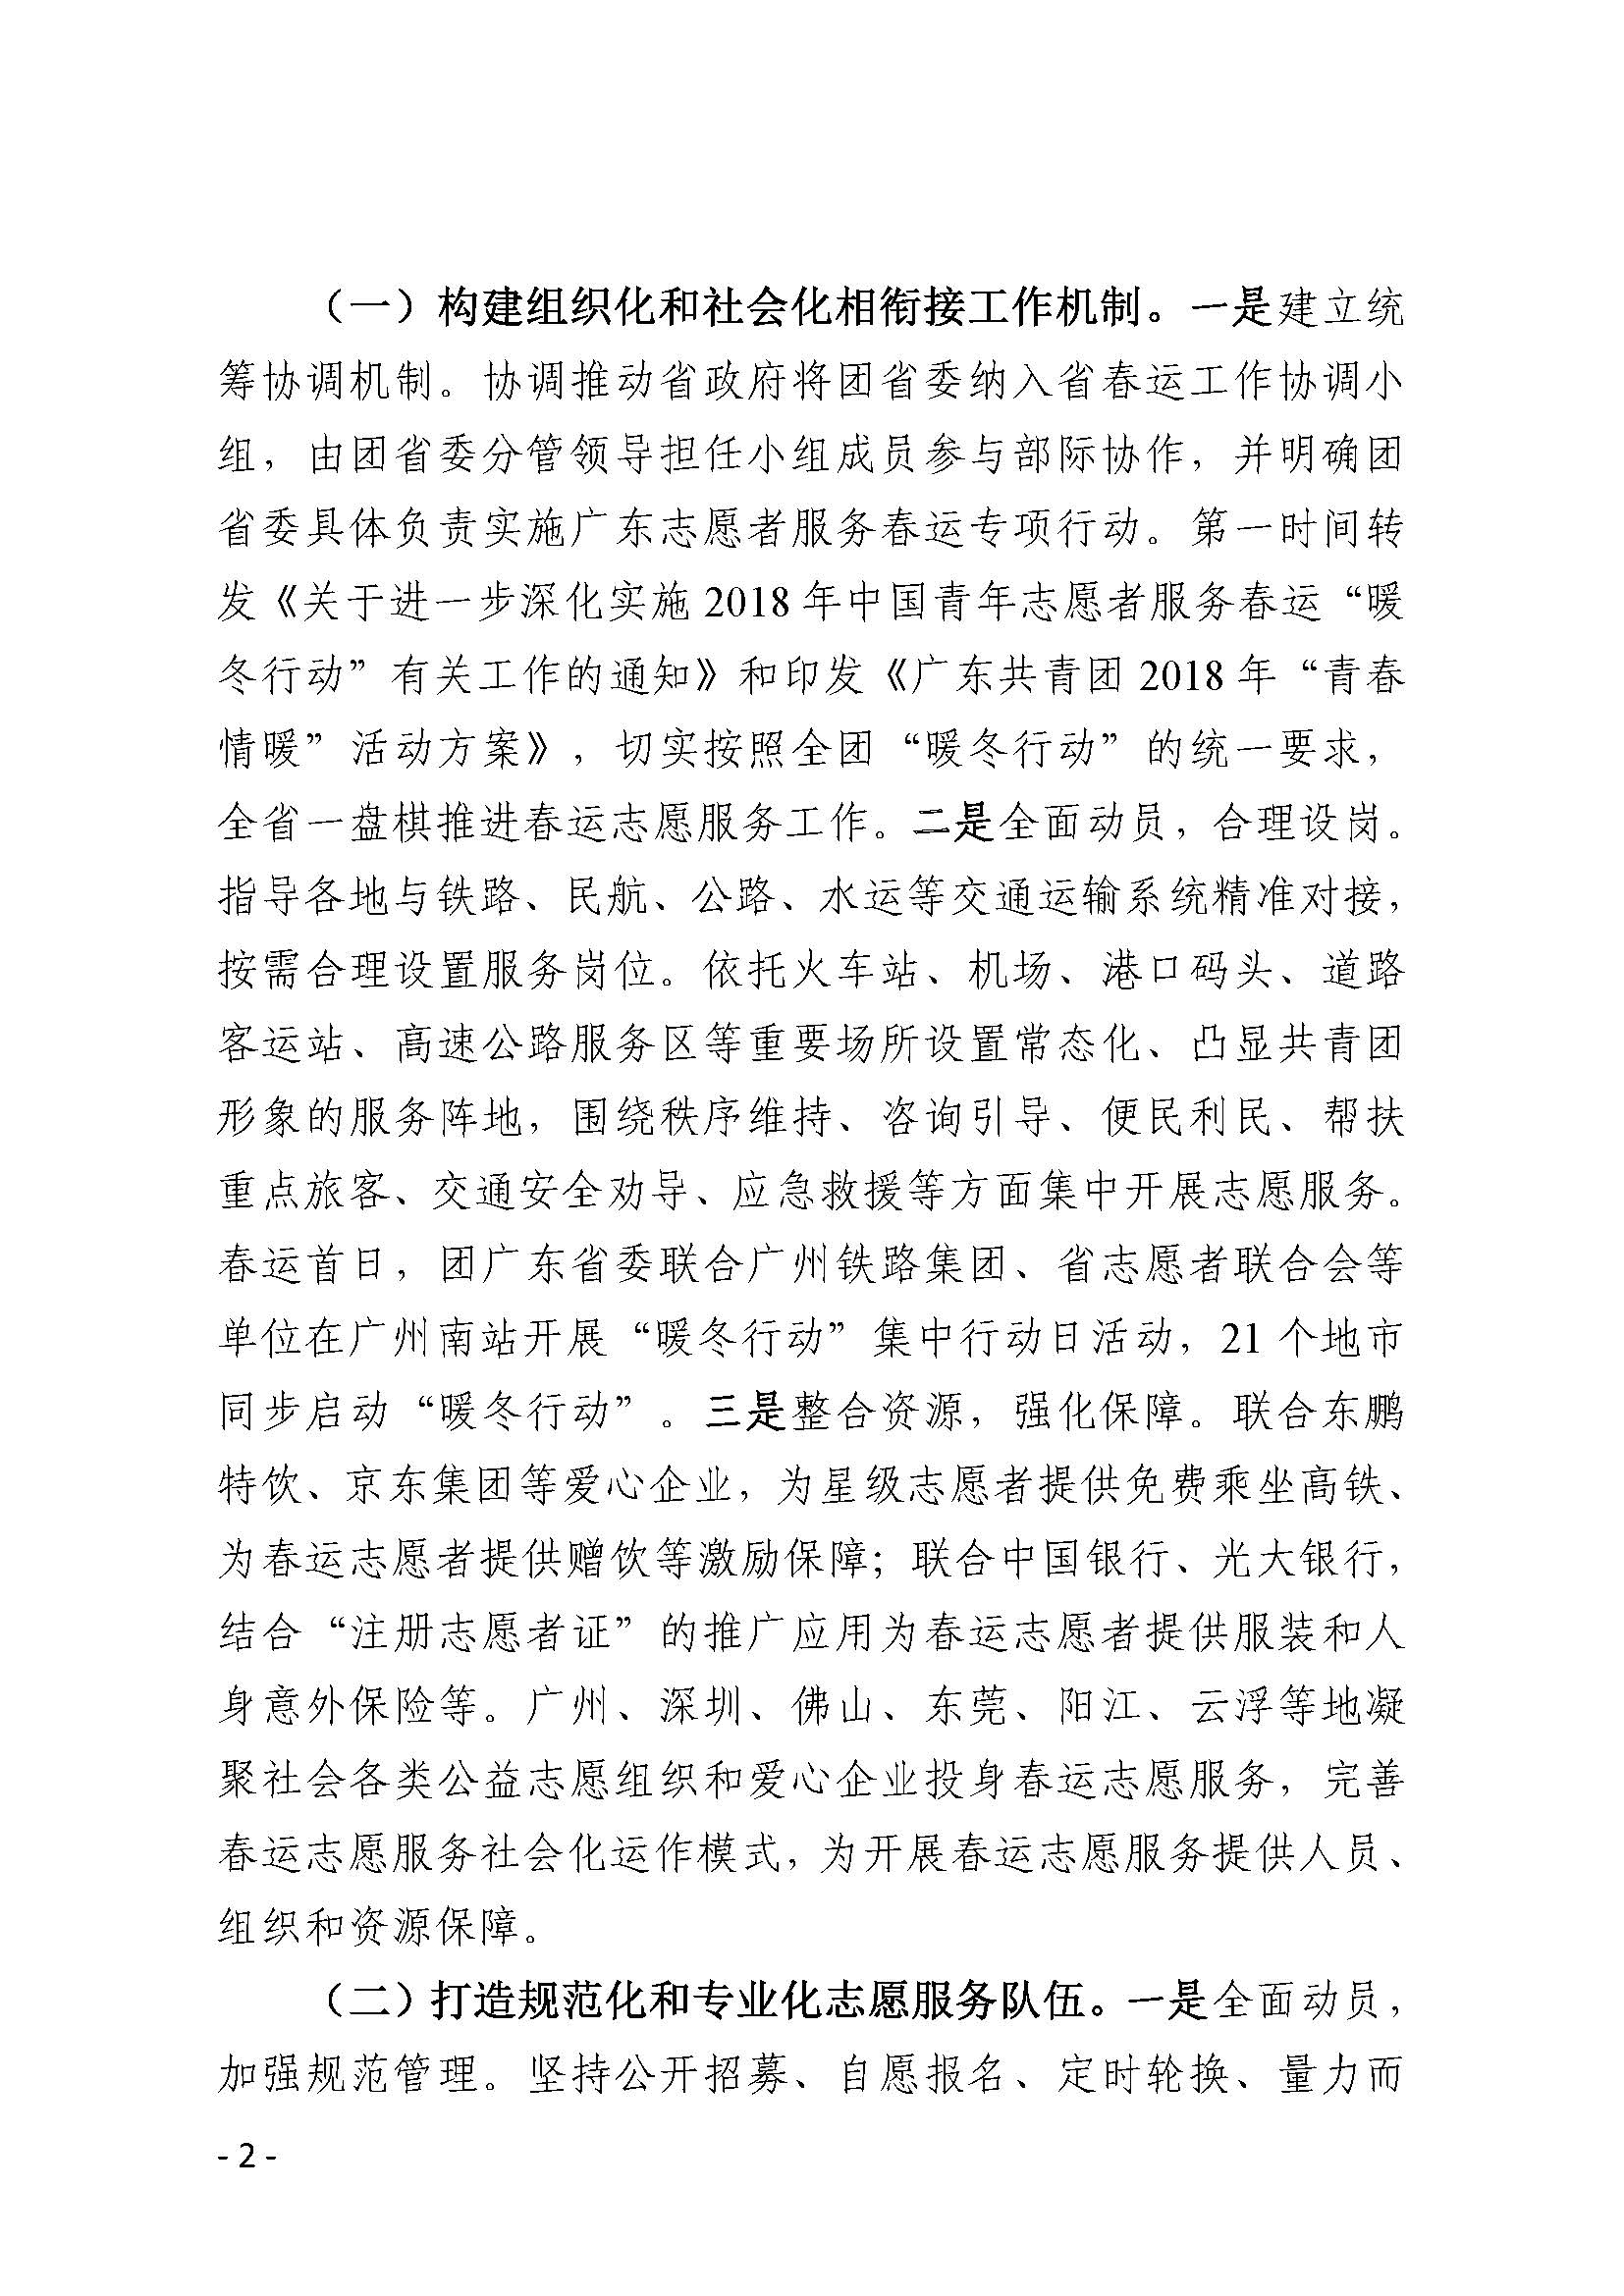 广东志愿服务工作信息（暖冬行动）_页面_2.jpg